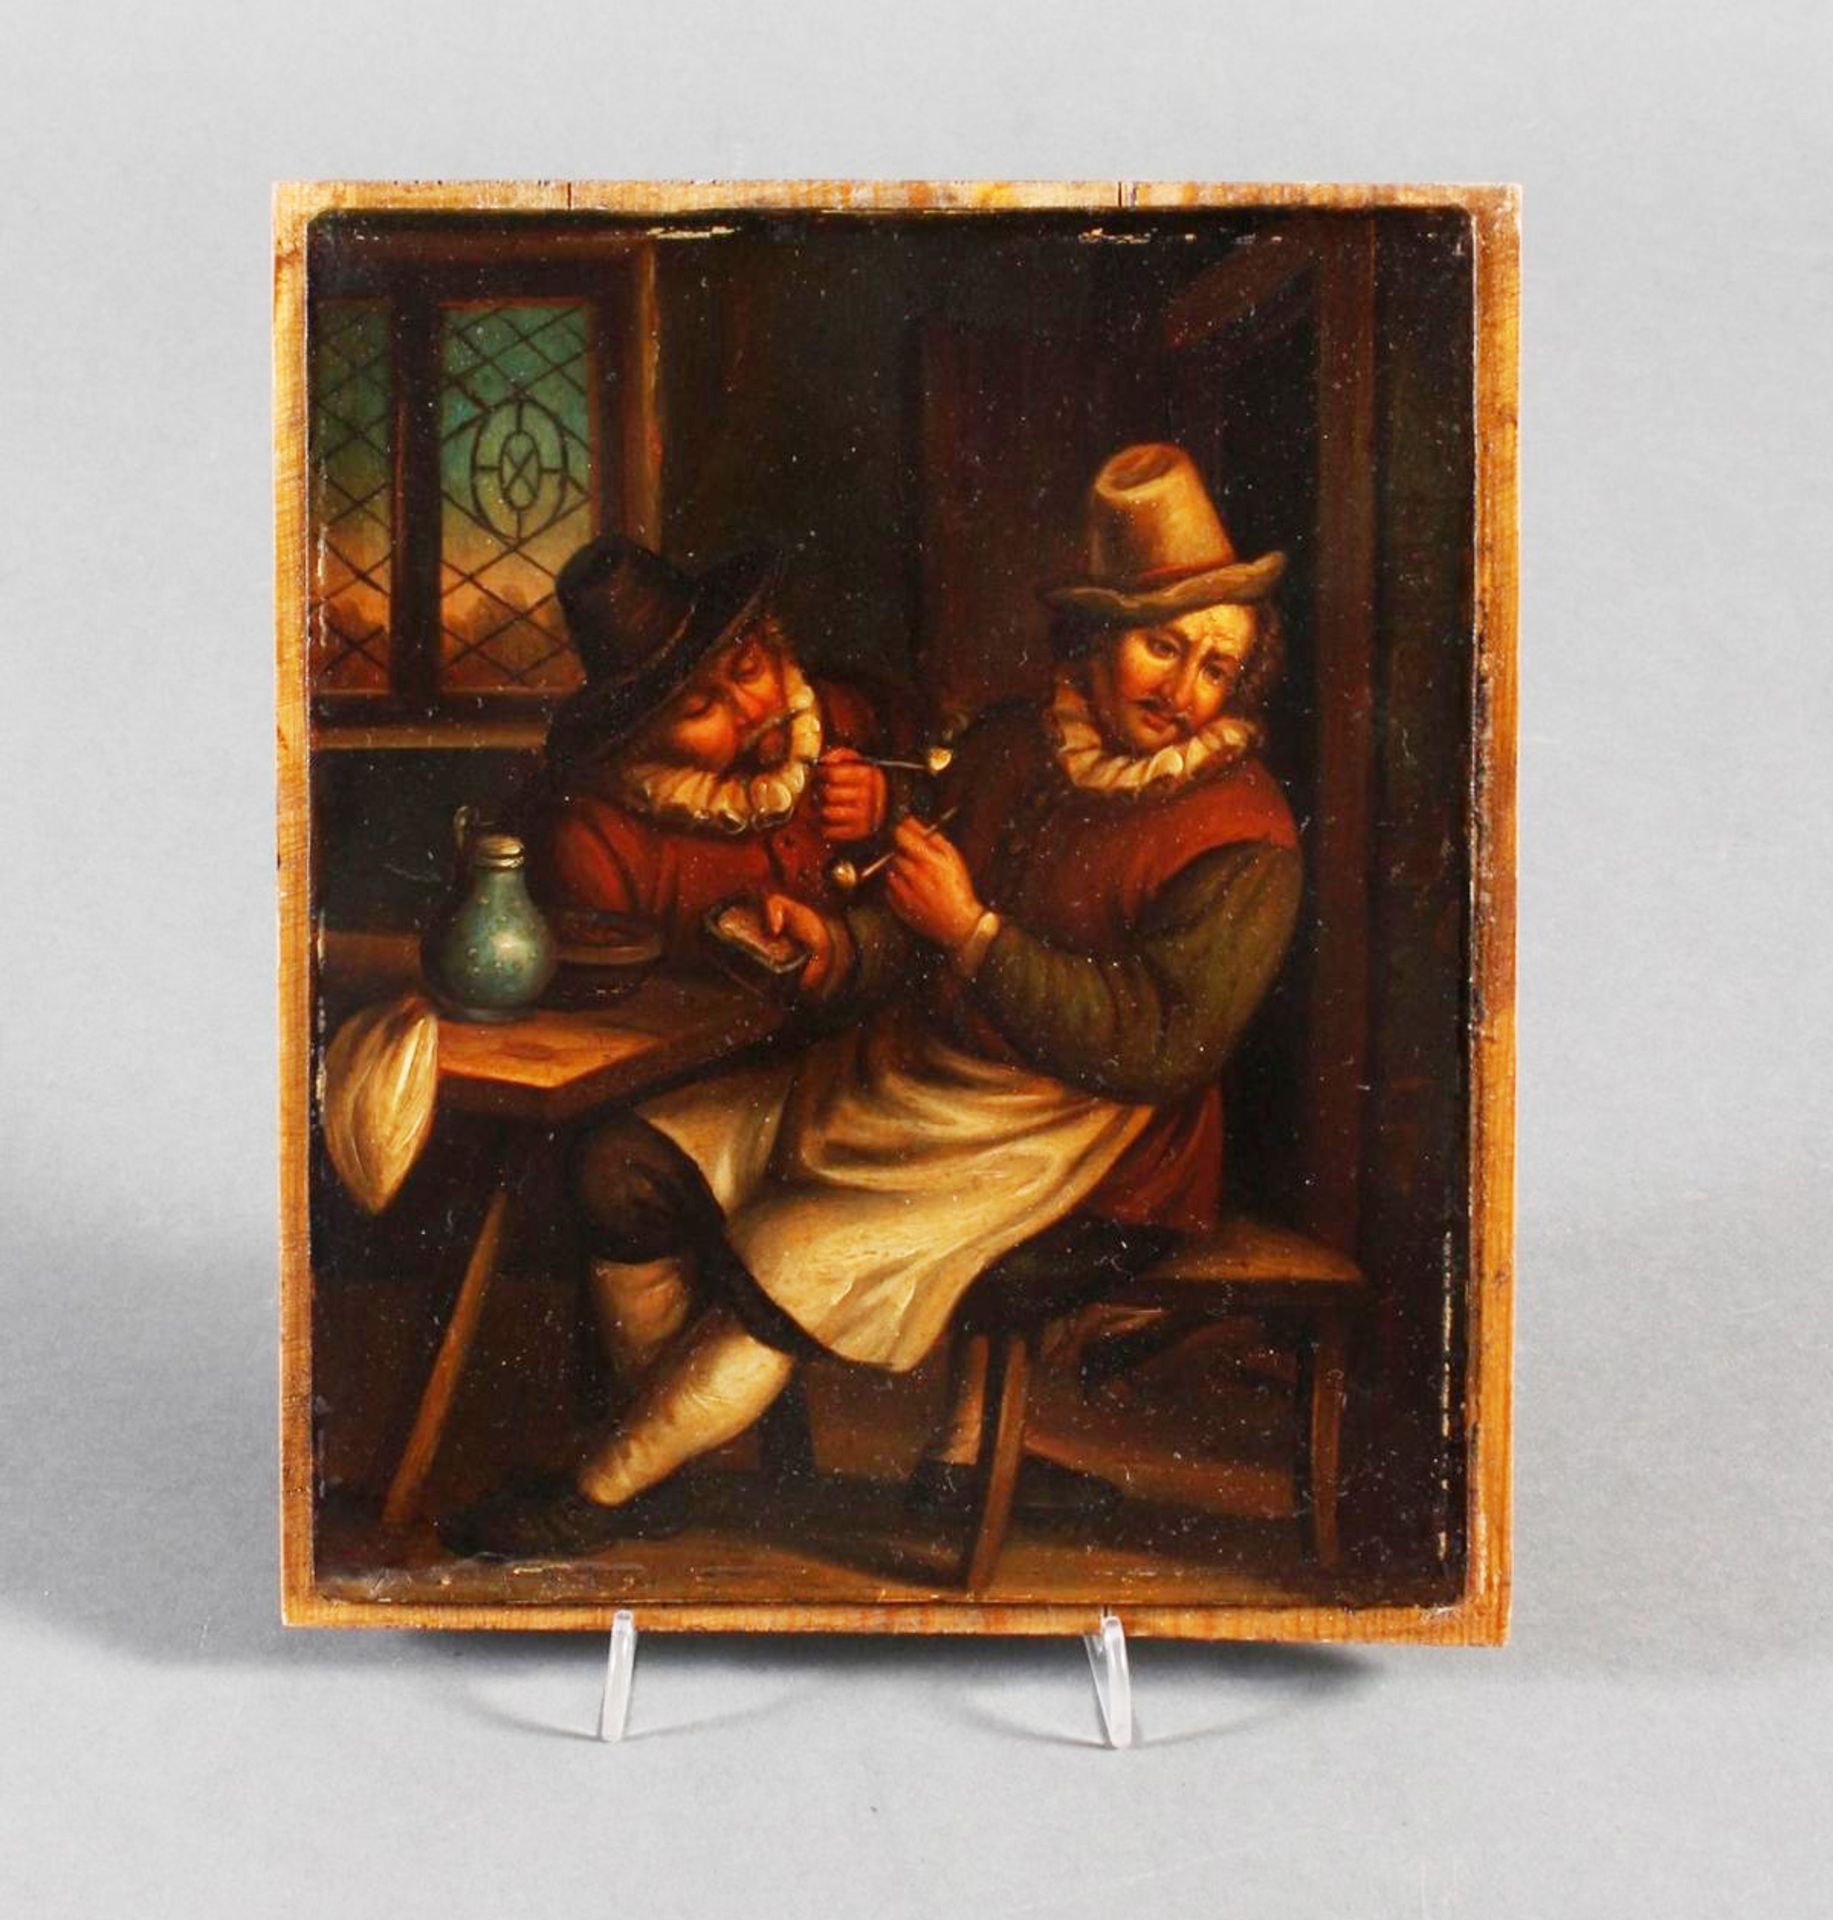 Ölgemälde, wohl Holland 18. Jahrhundert, "Die Raucher in der guten Stube